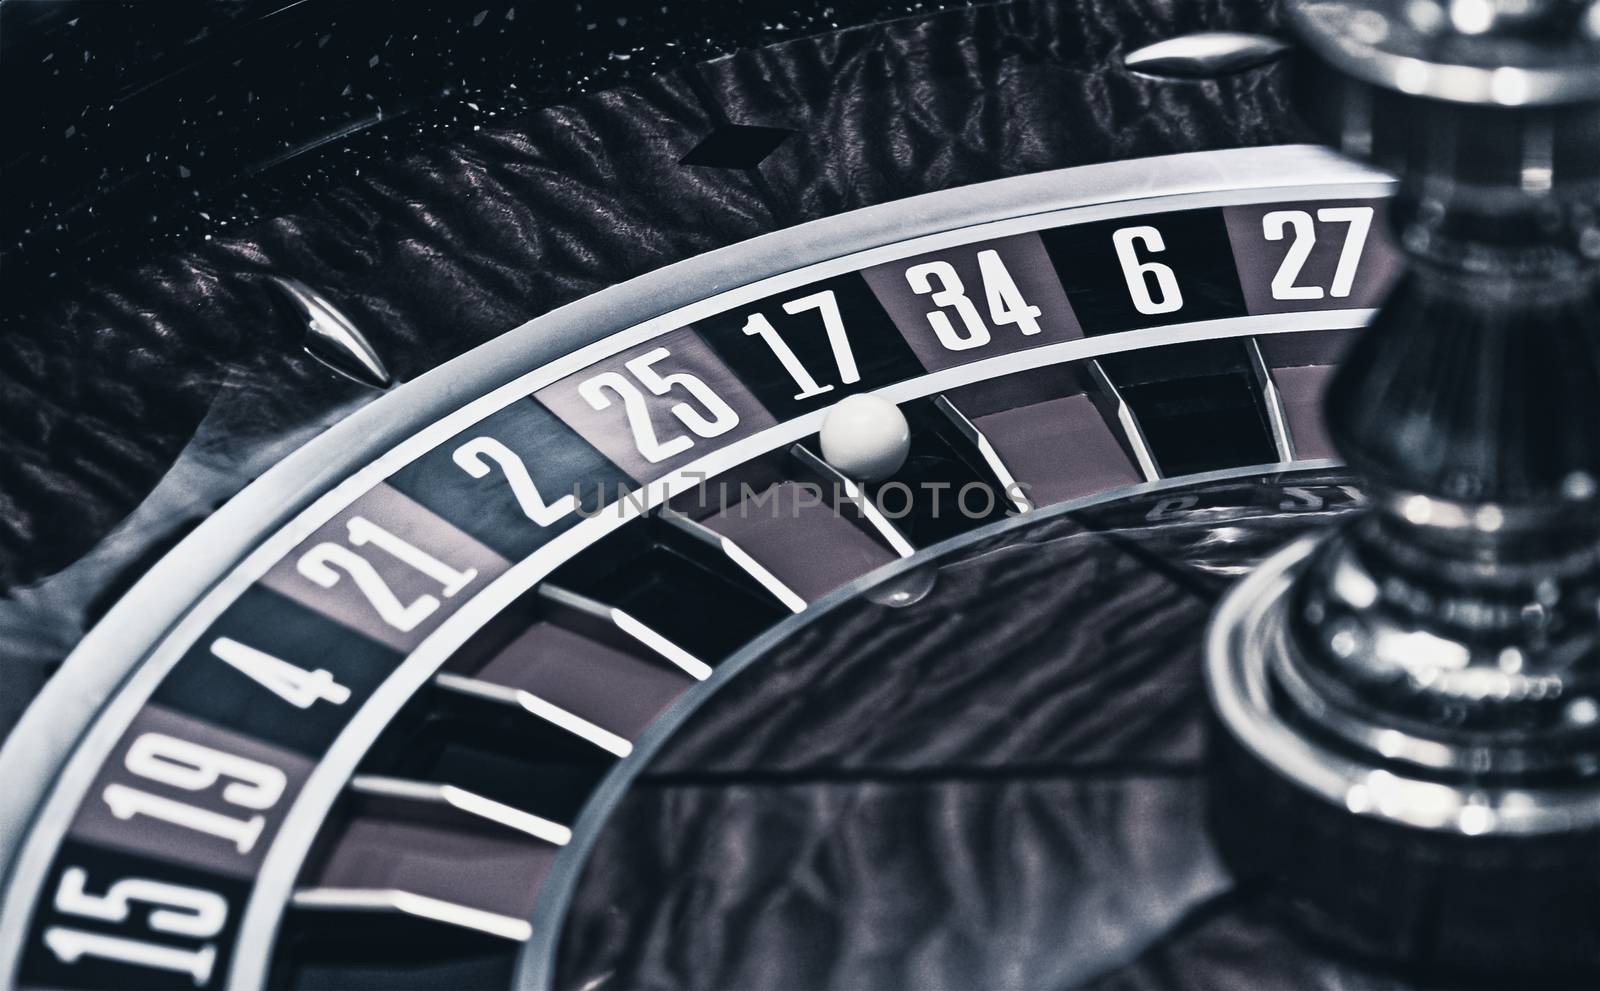 Roulette wheel in casino, gambling ads